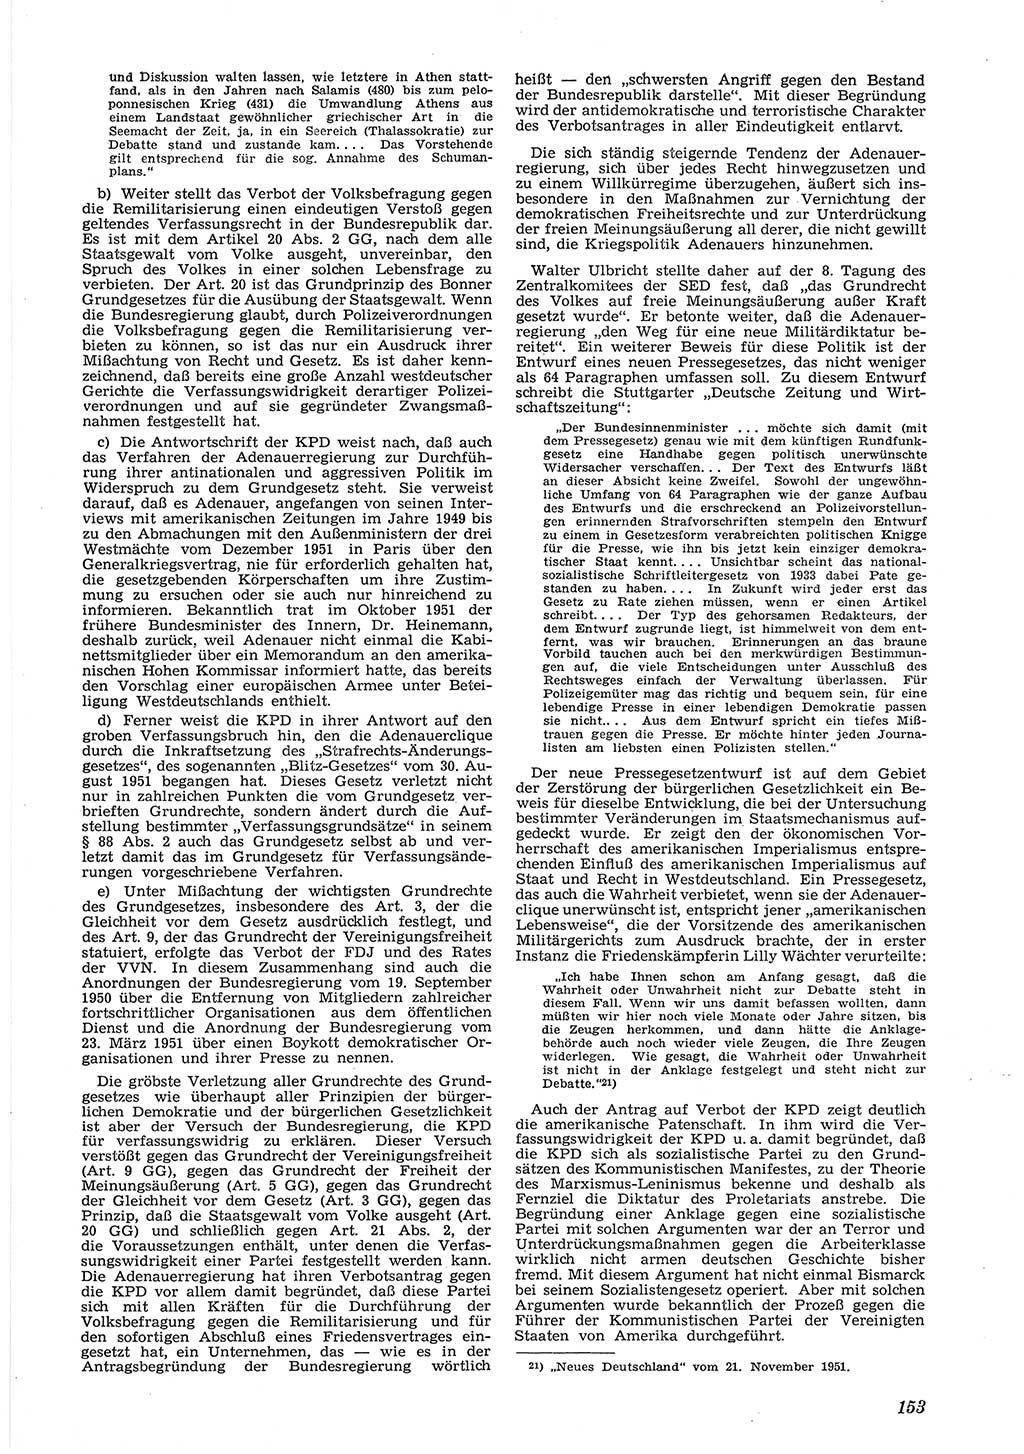 Neue Justiz (NJ), Zeitschrift für Recht und Rechtswissenschaft [Deutsche Demokratische Republik (DDR)], 6. Jahrgang 1952, Seite 153 (NJ DDR 1952, S. 153)